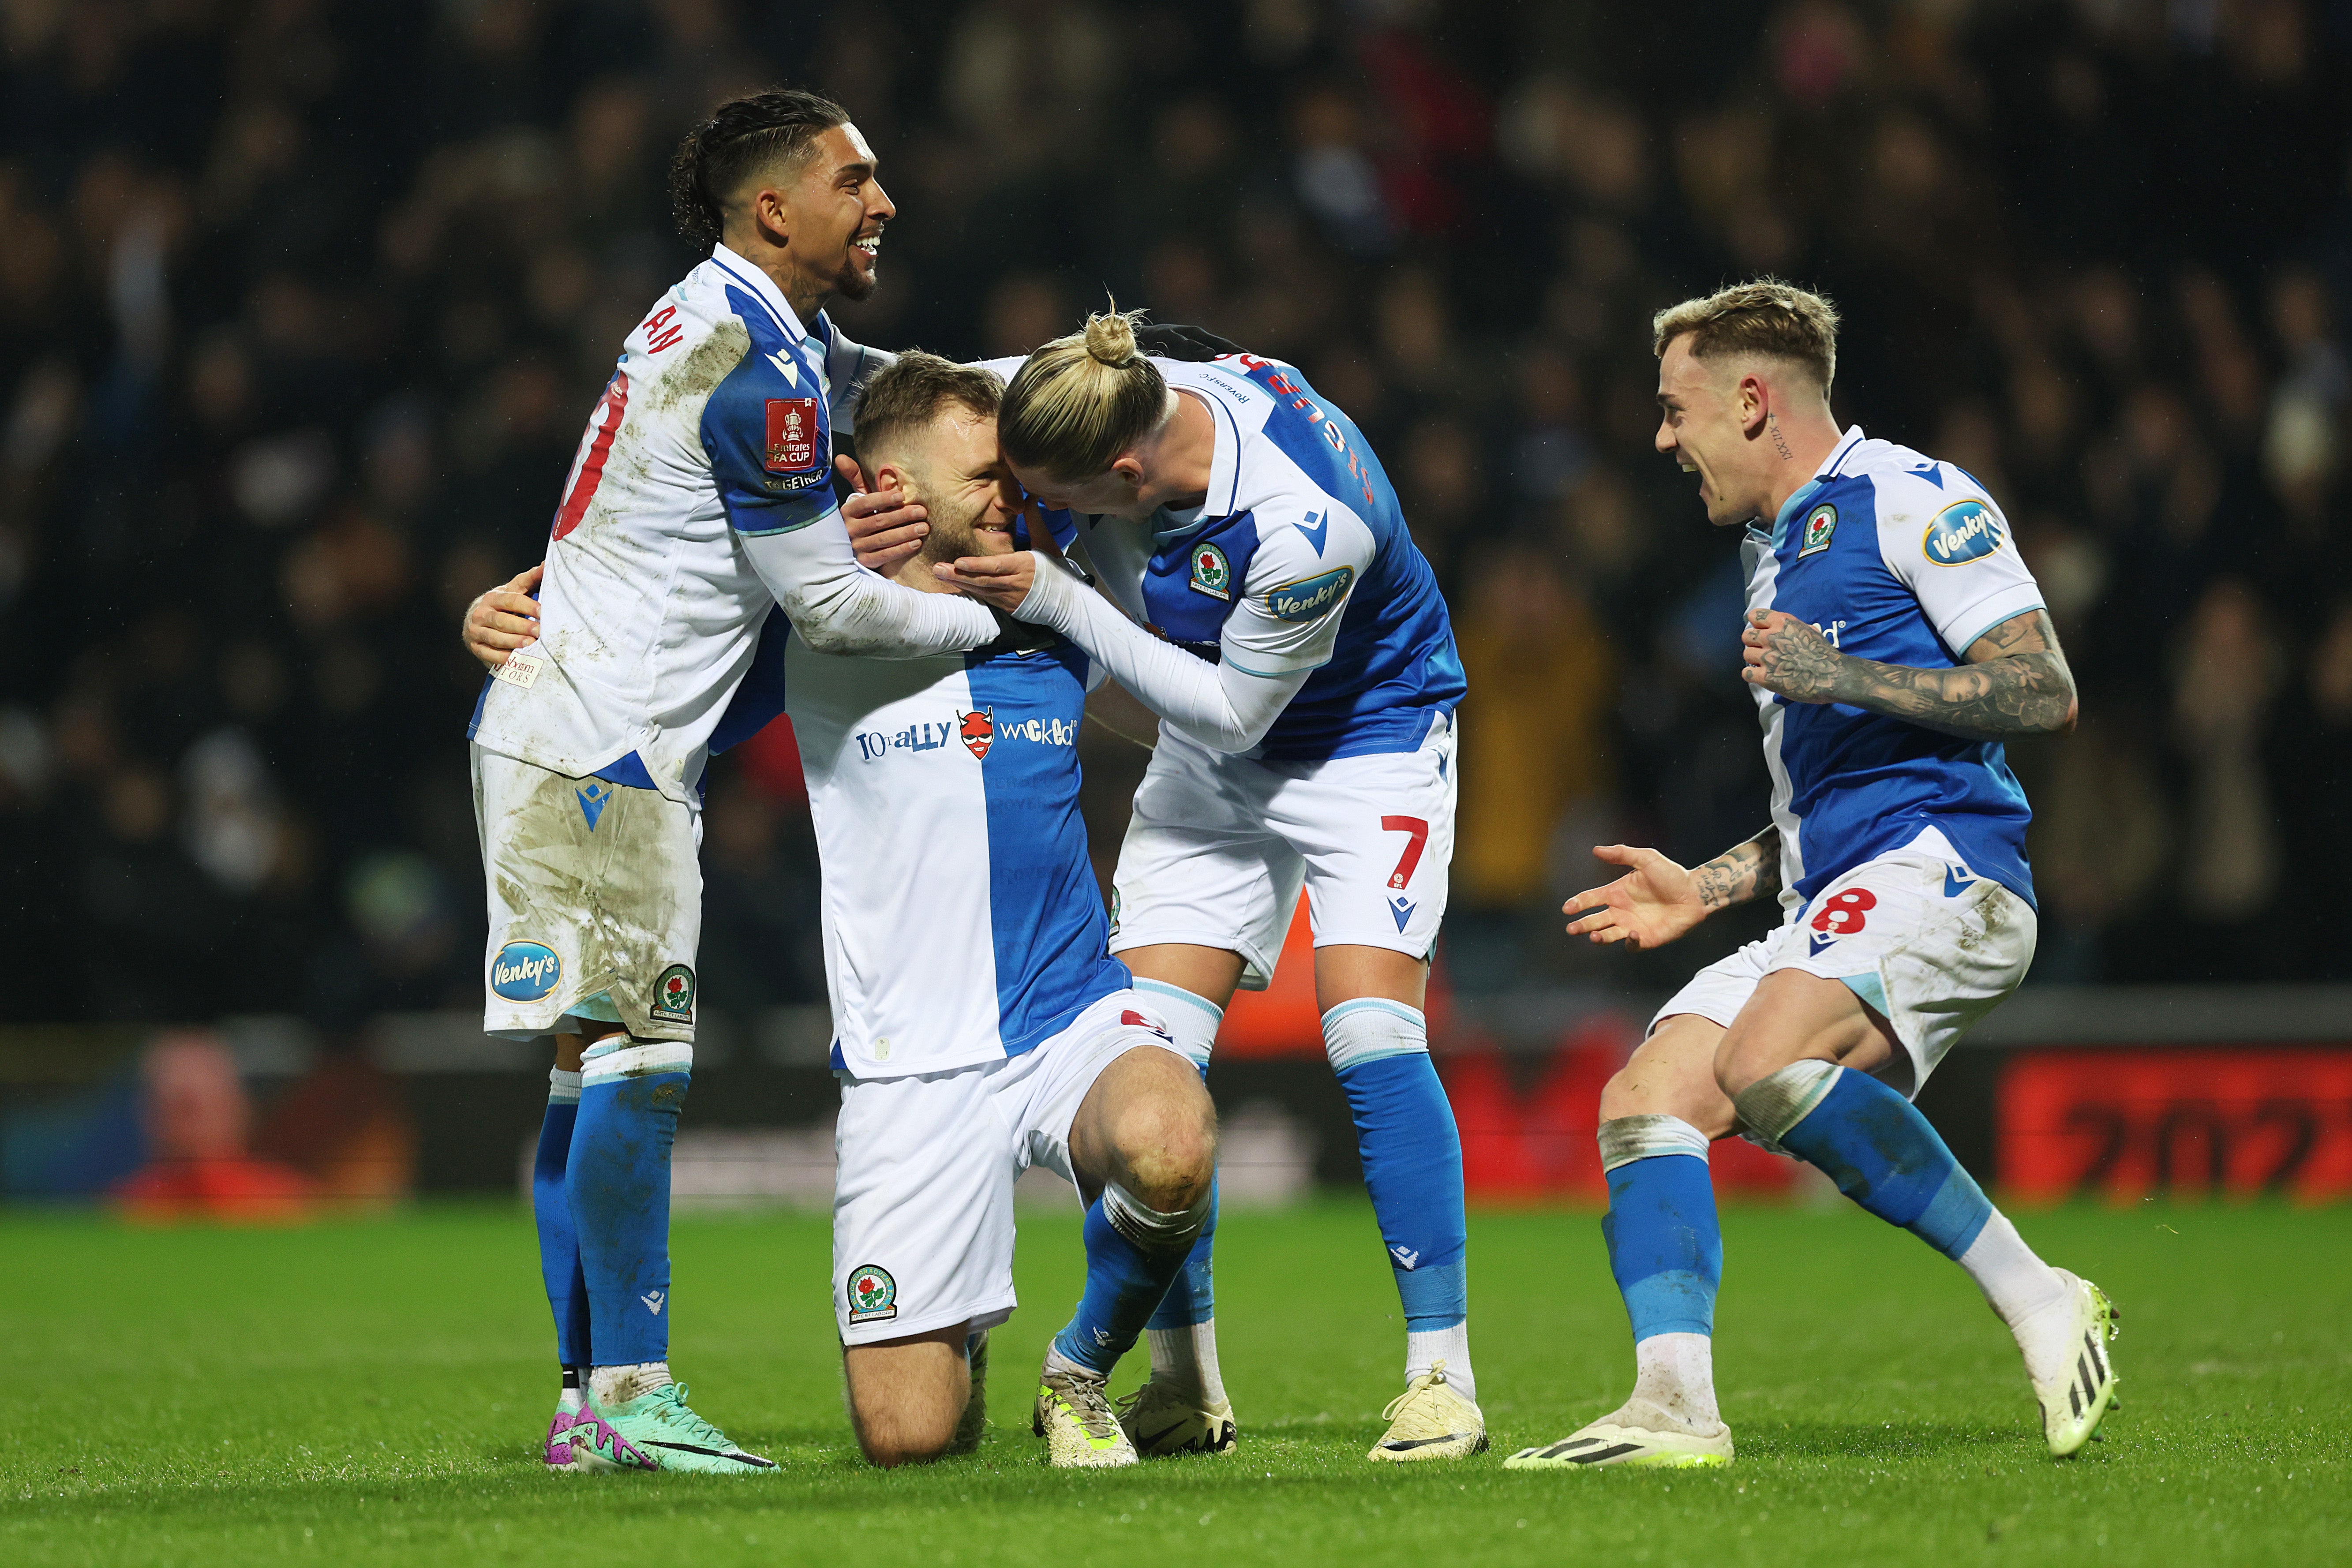 Sondre Tronstad, second left, celebrates after scoring Blackburn’s fourth goal